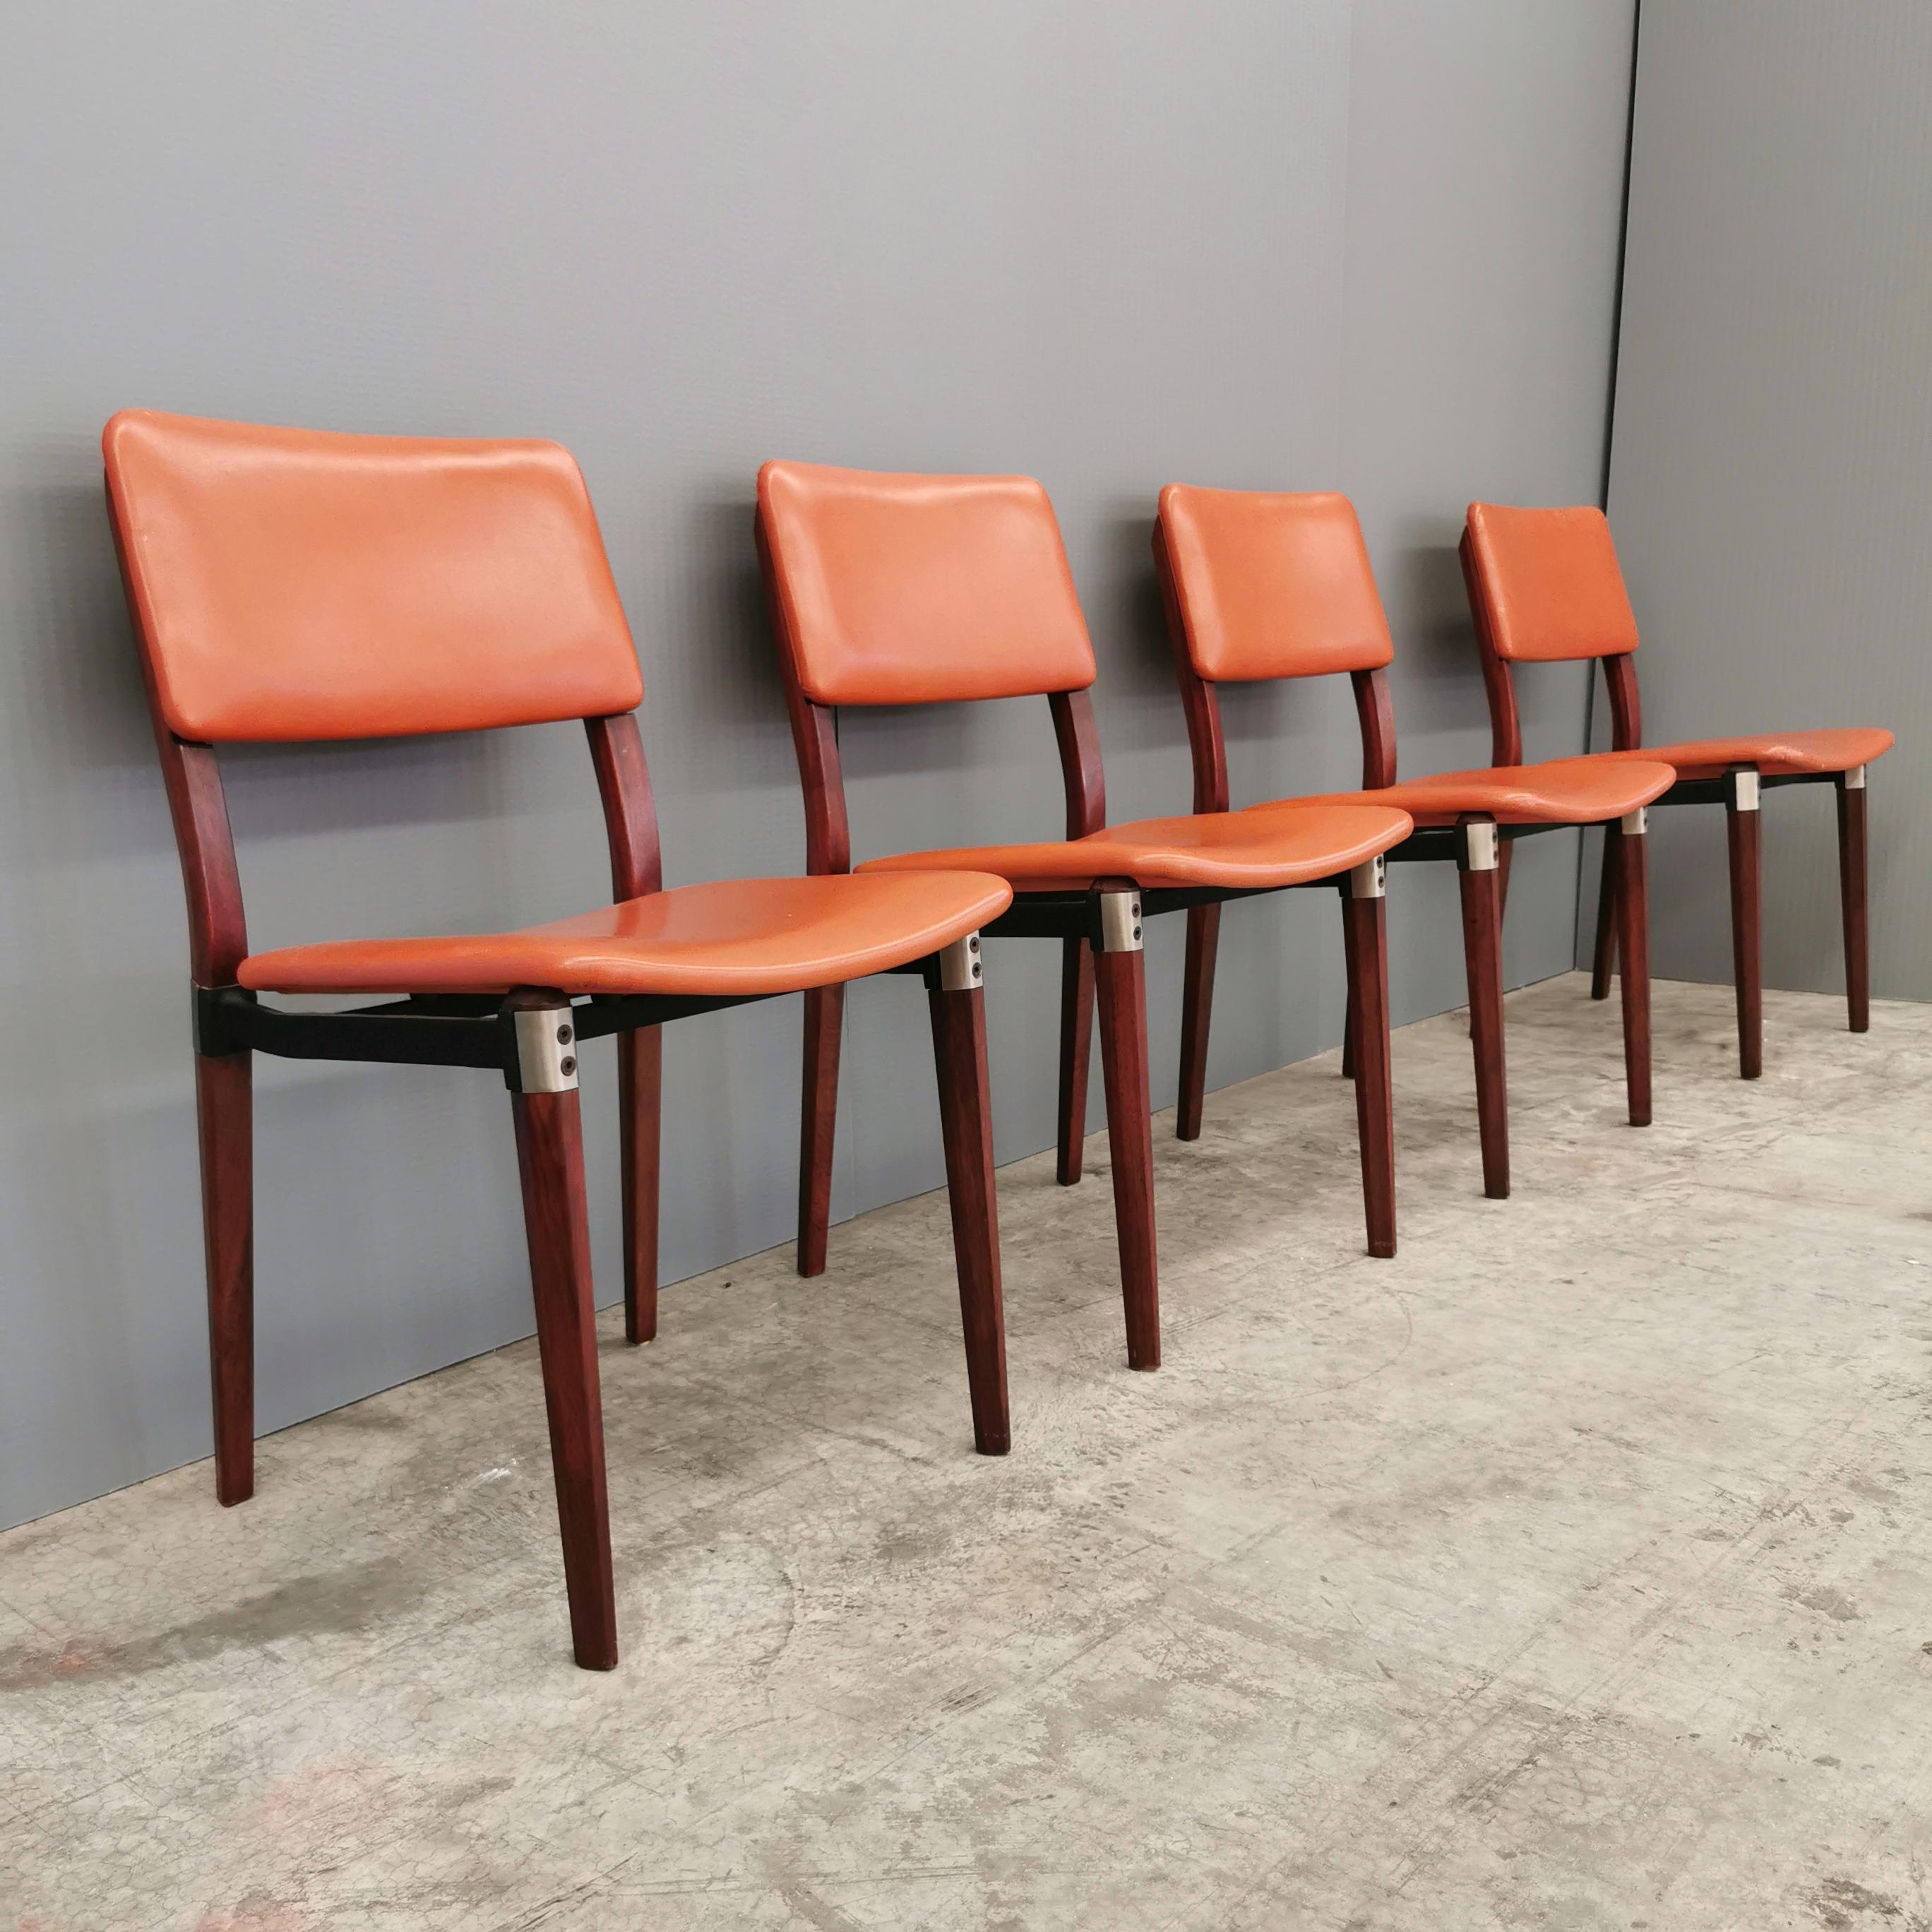 ensemble de 4 chaises avec structure en bois et revêtement en cuir. Conçu au début des années 1960 par Eugenio Gerli pour Tecno. Chaise très élégante et robuste avec inserts et articulations en acier. Les chaises sont en excellent état, sans